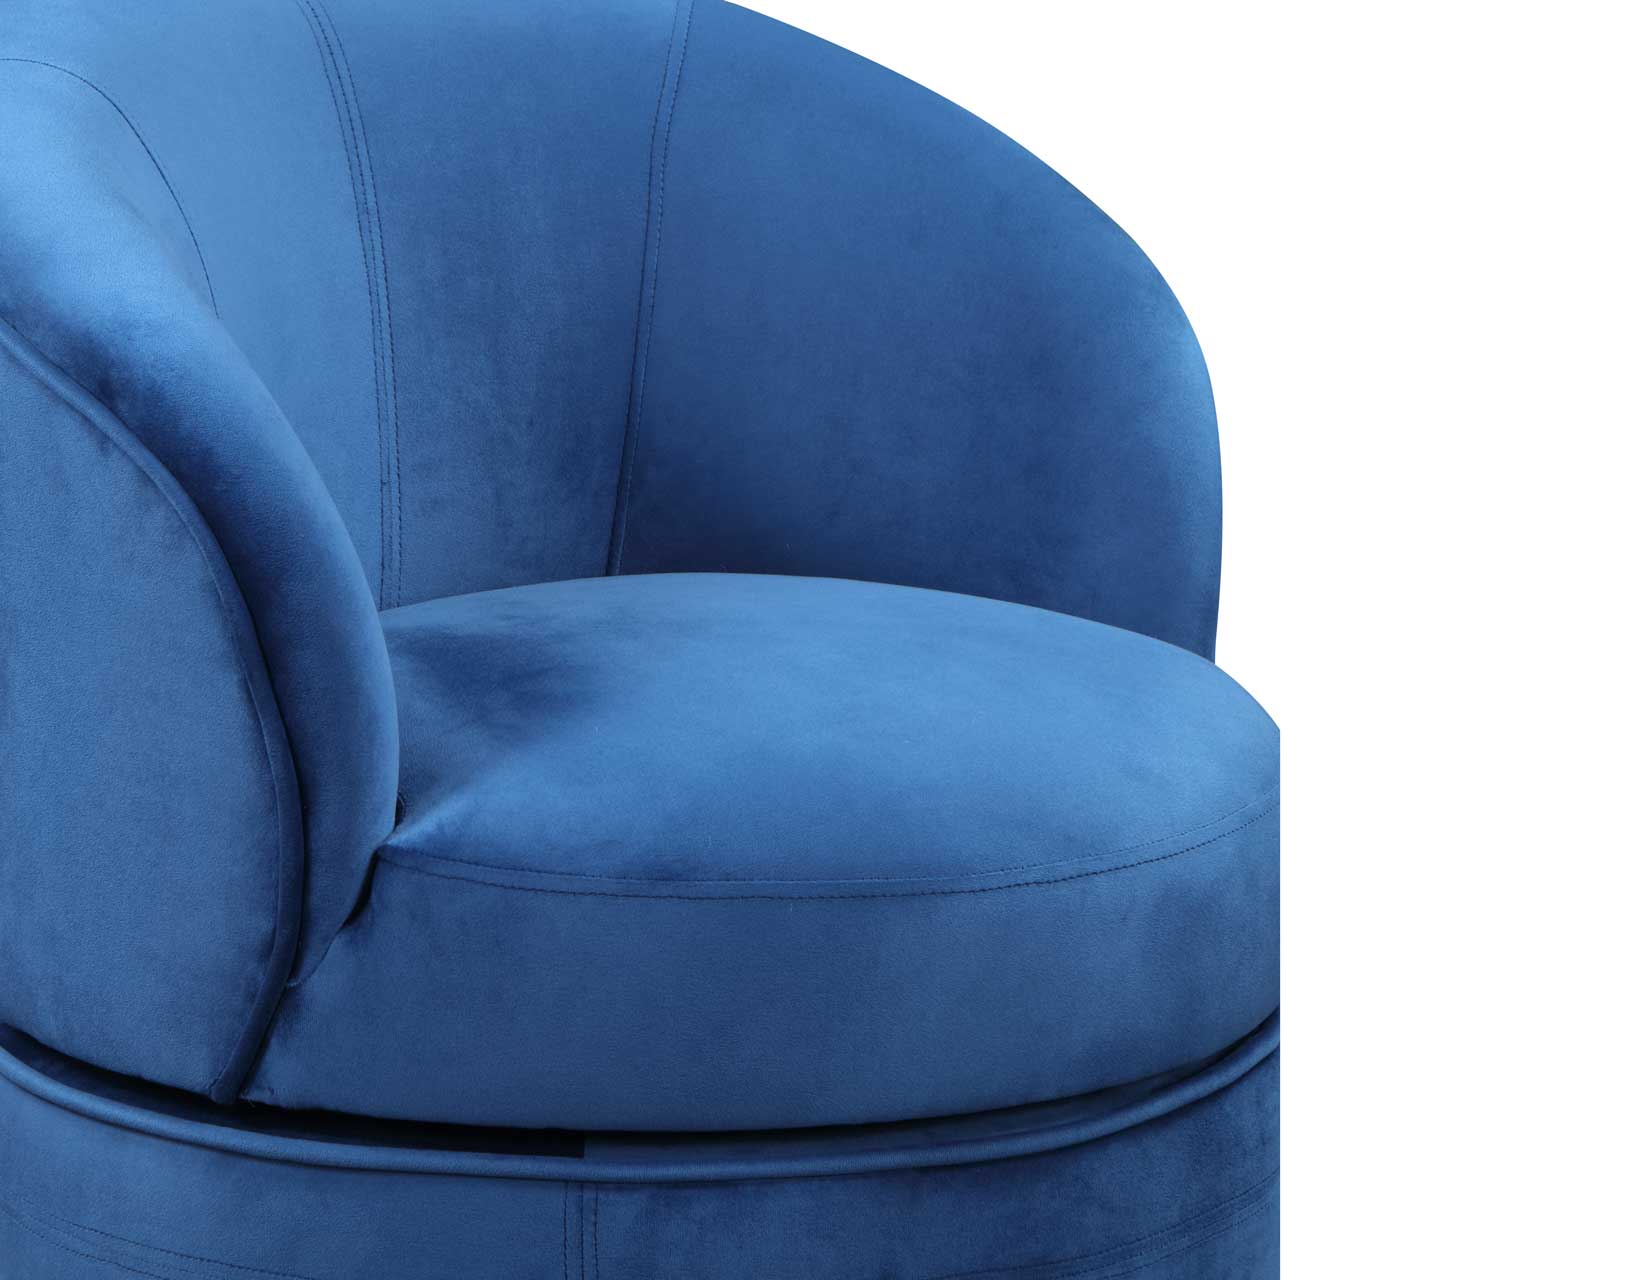 Sophia Swivel Accent Chair, Blue Velvet by Steve Silver